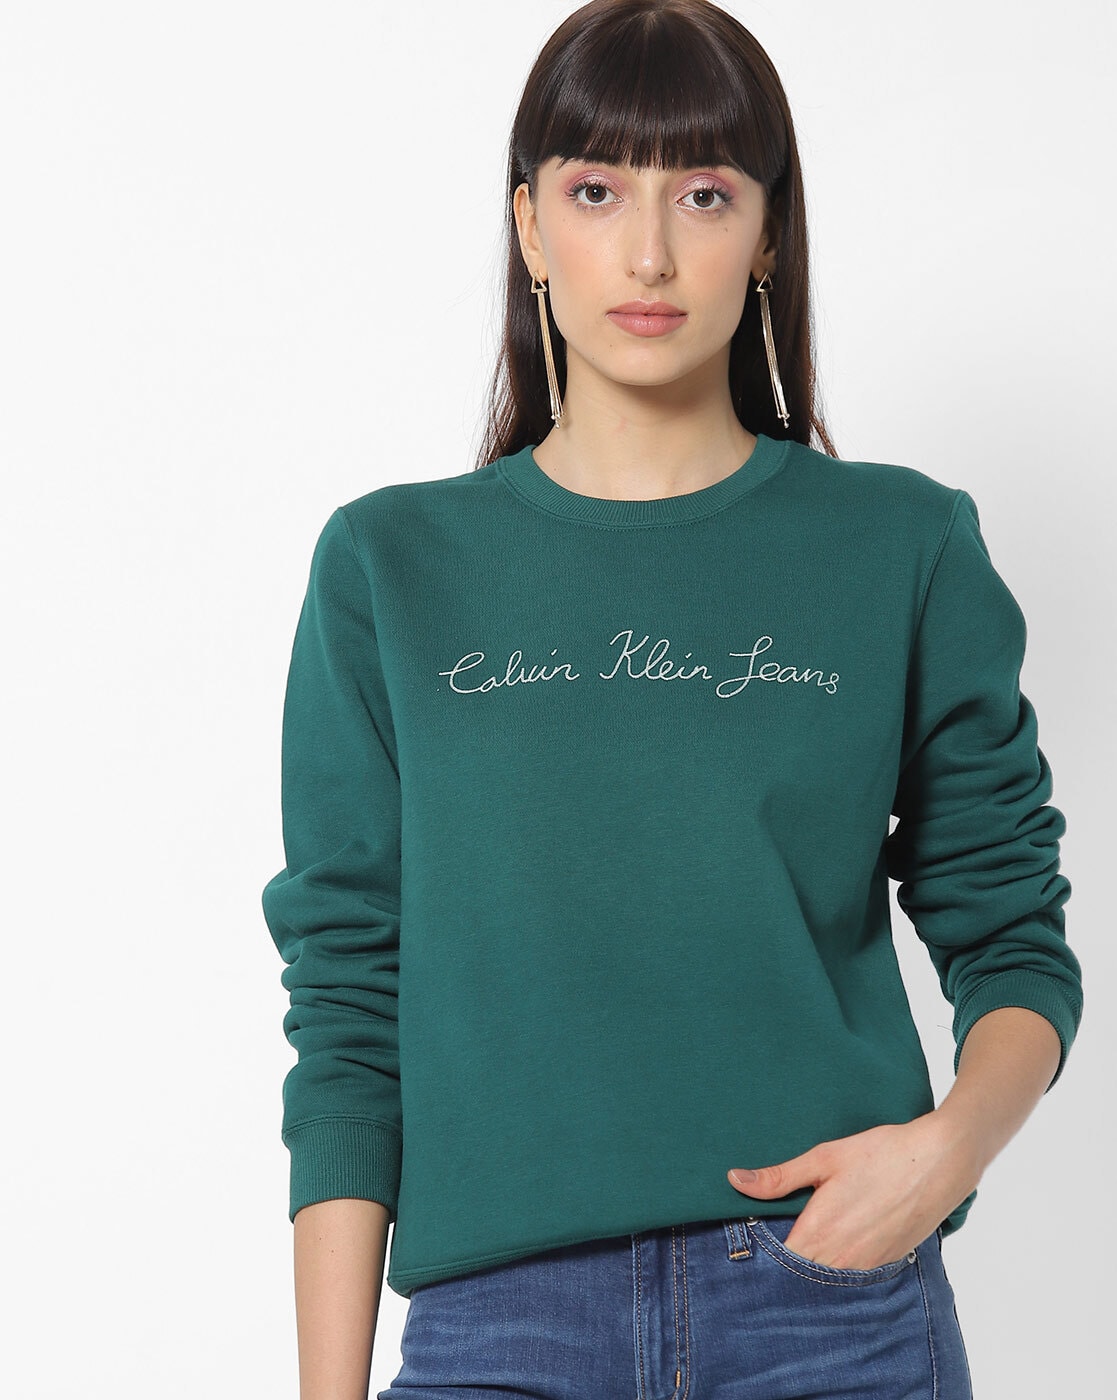 Buy Calvin Klein Jeans Glitch Monologo Hoodie - NNNOW.com